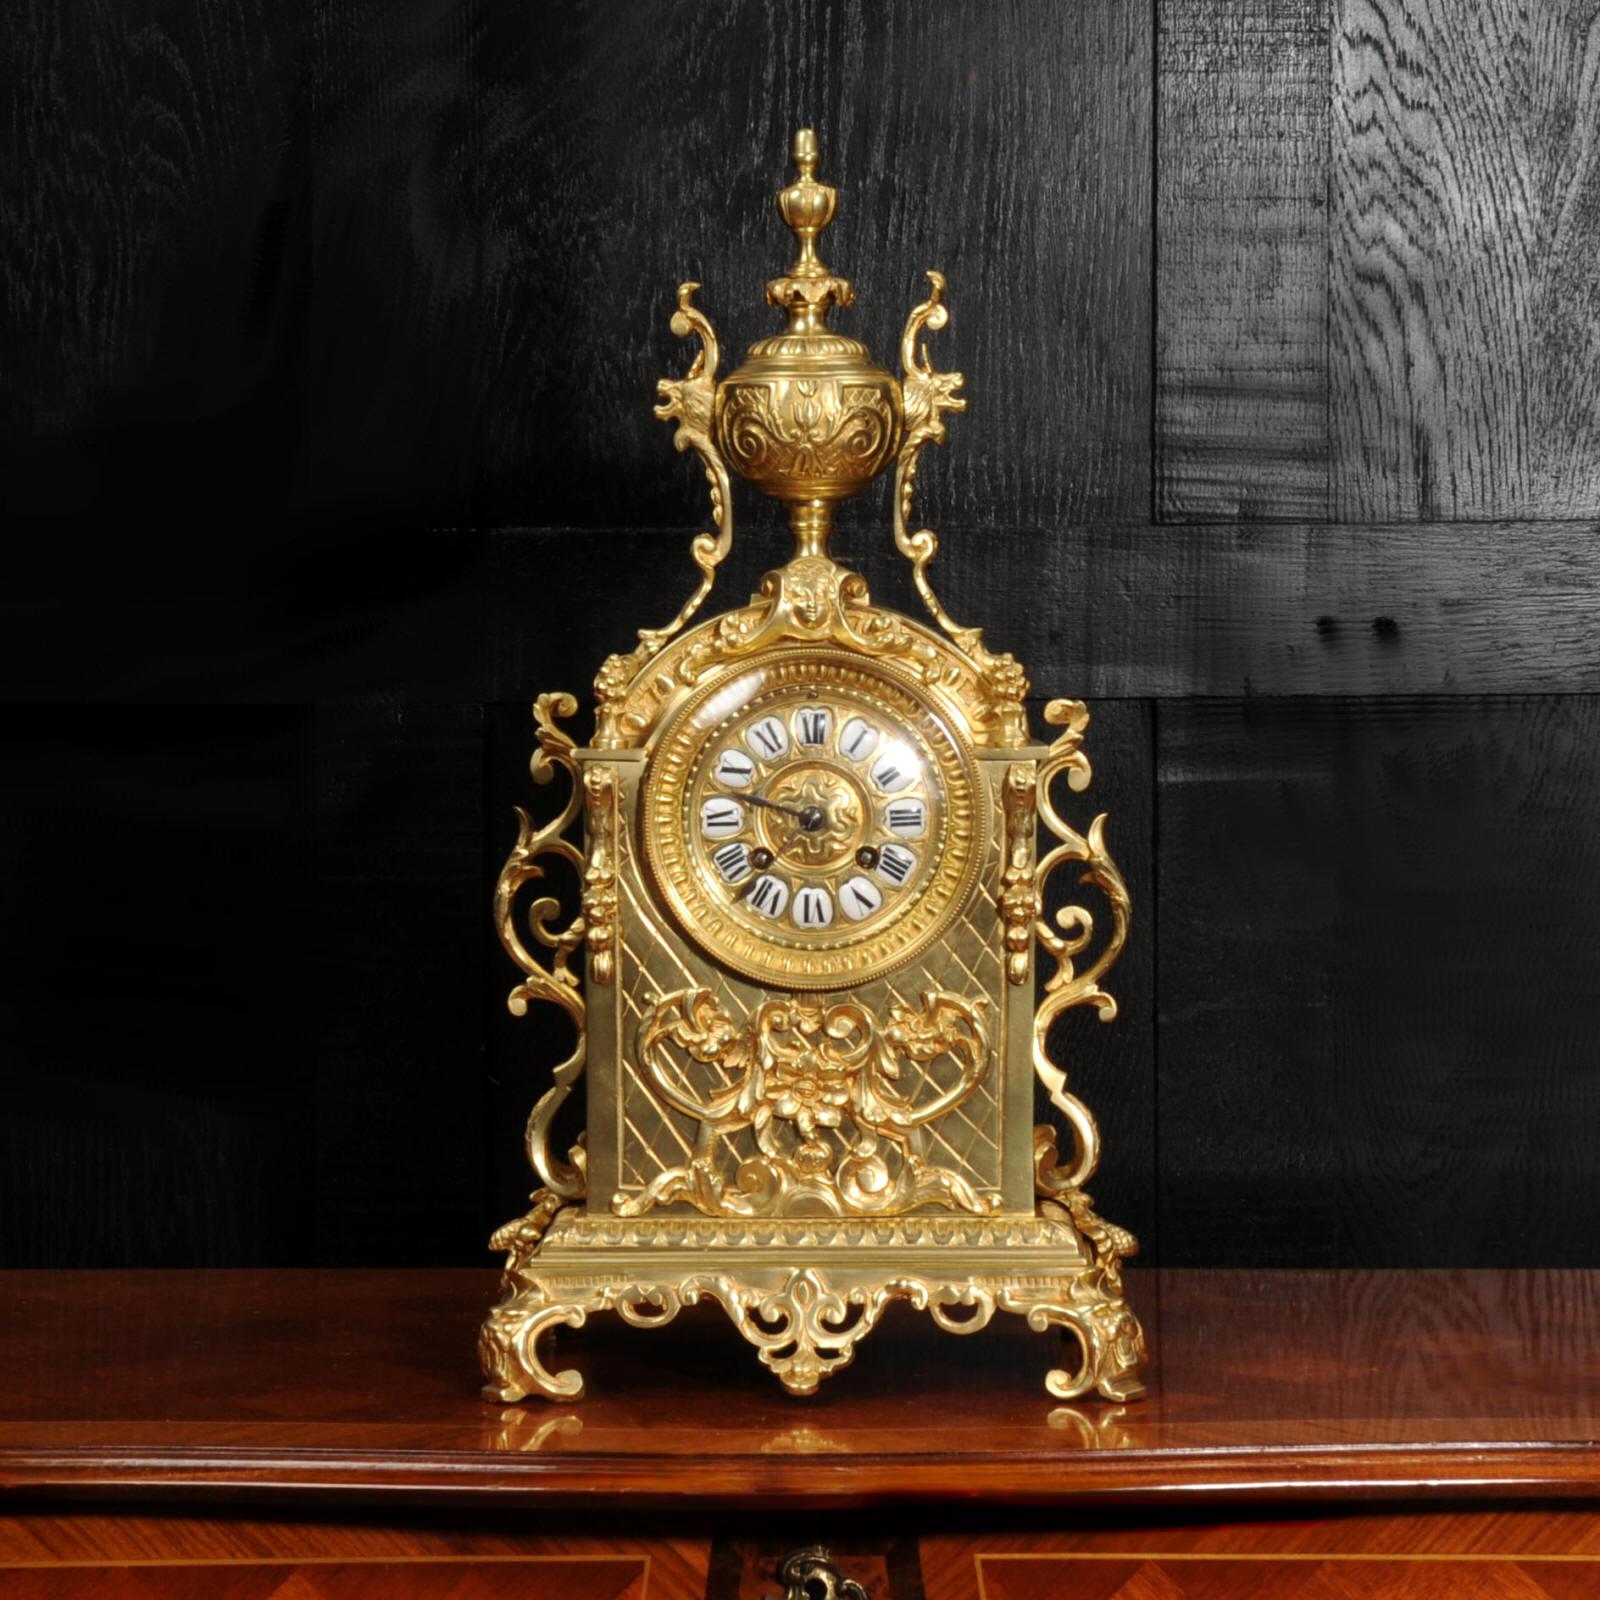 Eine schöne originale antike französische Uhr im Barockstil aus vergoldeter Bronze. Es hat eine architektonische Form mit einem applizierten Motiv aus Blumen, Schriftrollen und Füllhorn. An den Seiten sind geschwungene Halterungen angebracht, und